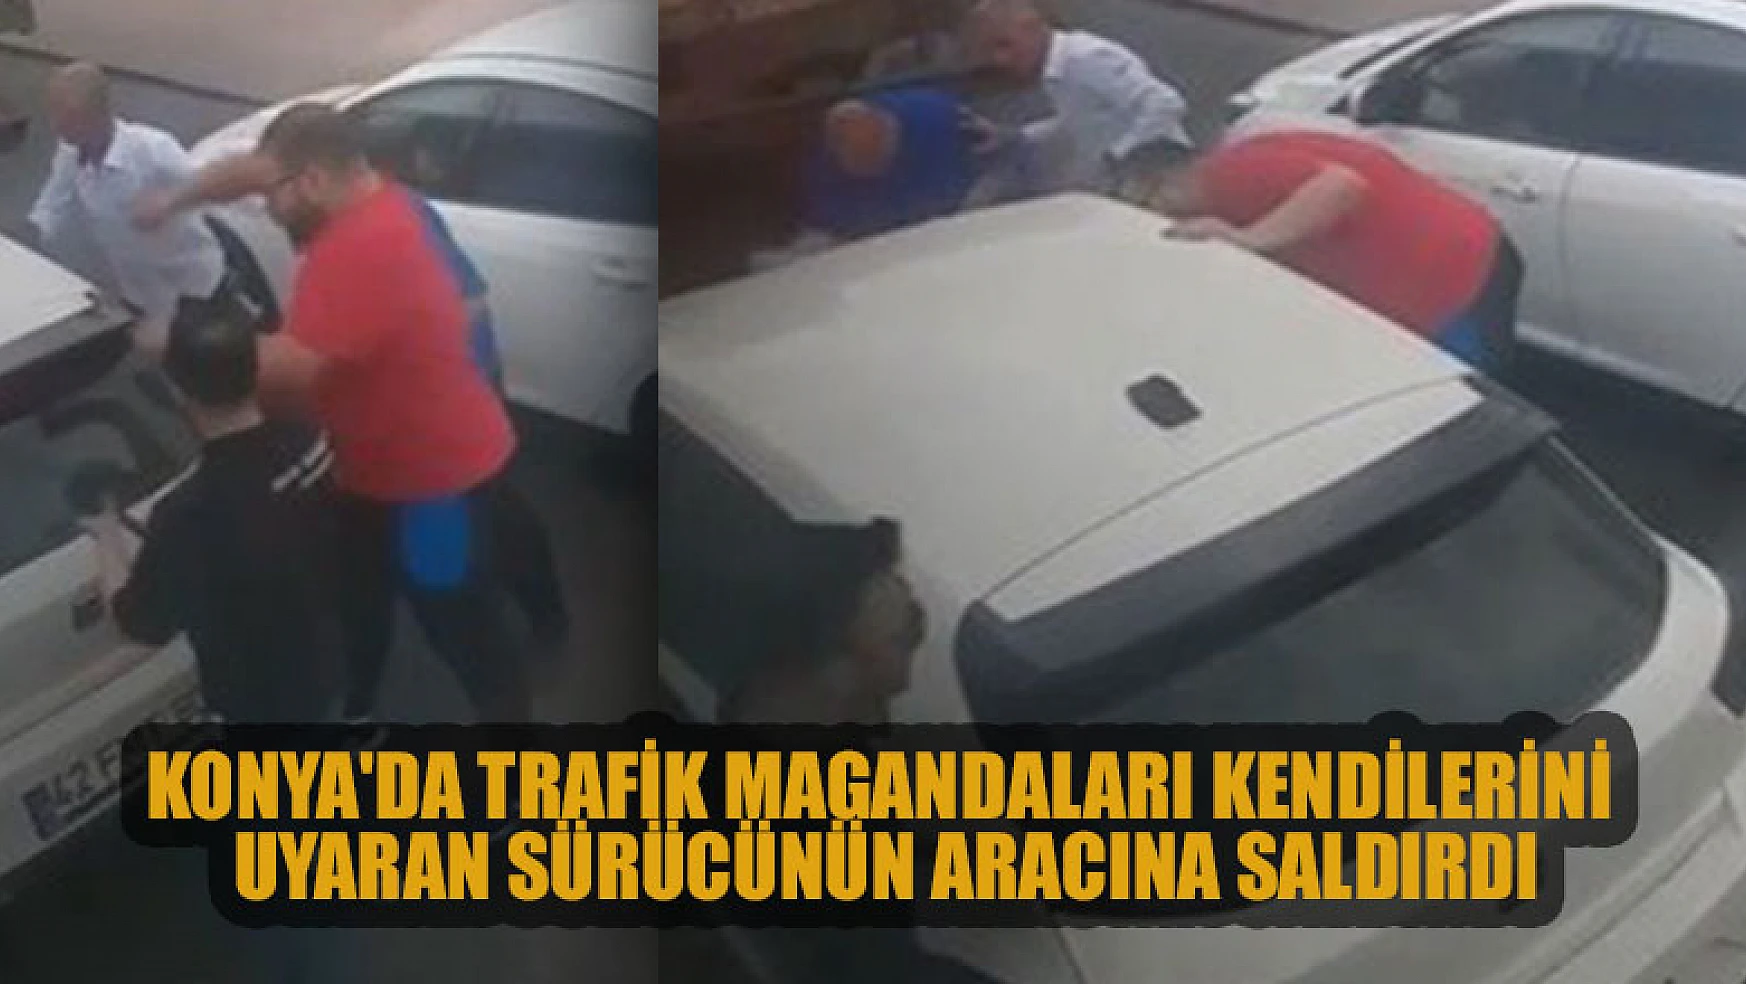 Konya'da trafik magandaları kendilerini uyaran sürücünün aracına saldırdı